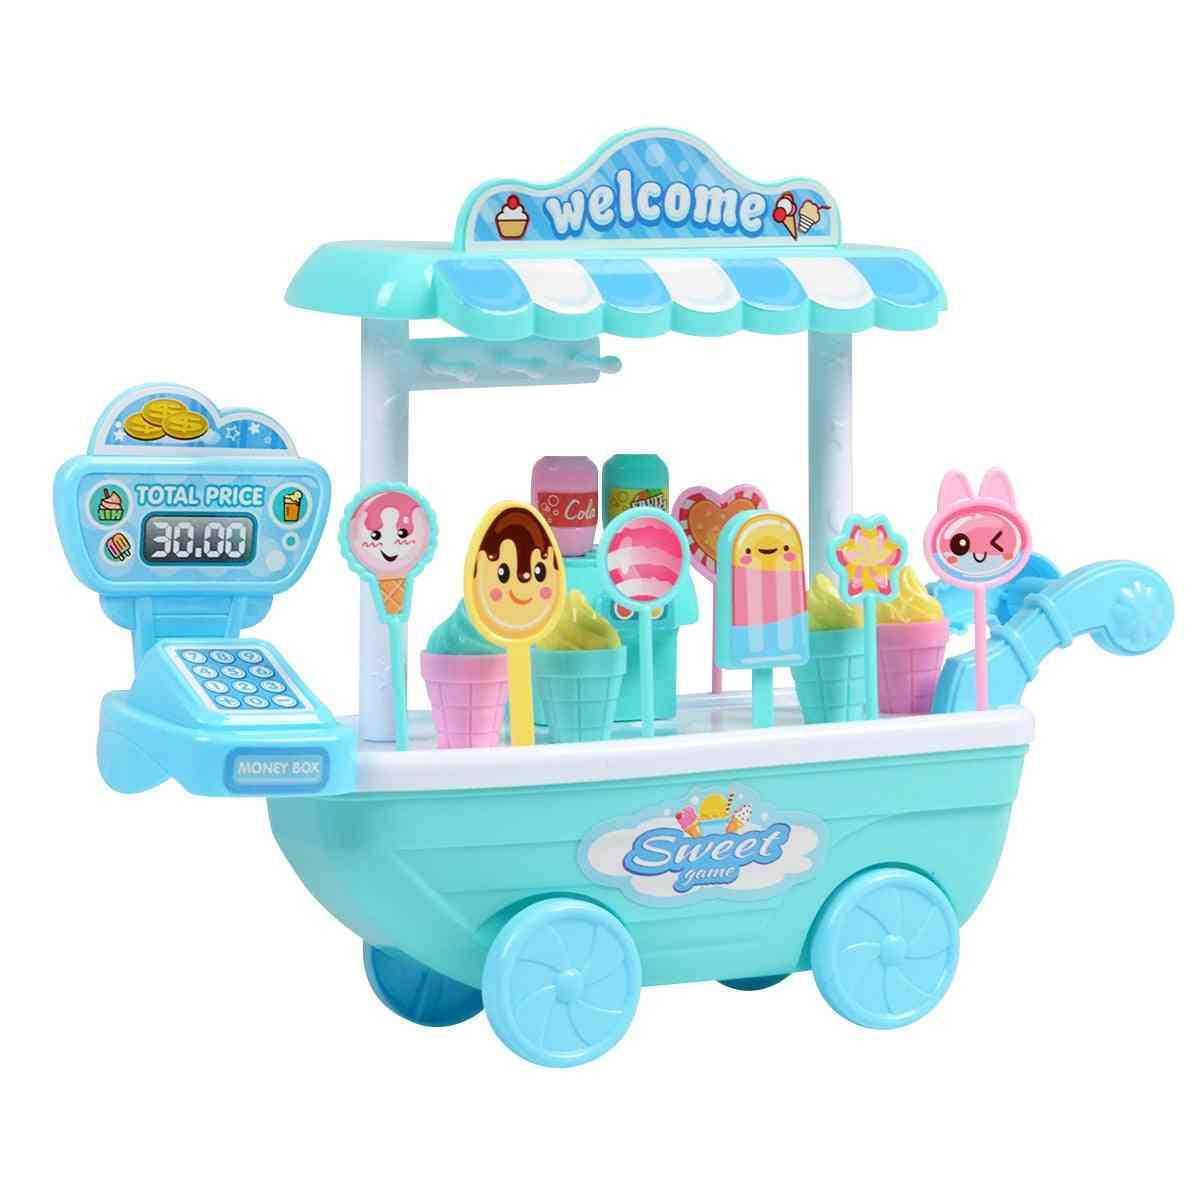 Otroška igra vlog, poučna igračka - mini voziček s sladkarijami snemljiva trgovina s sladoledom igrače blagajna božič